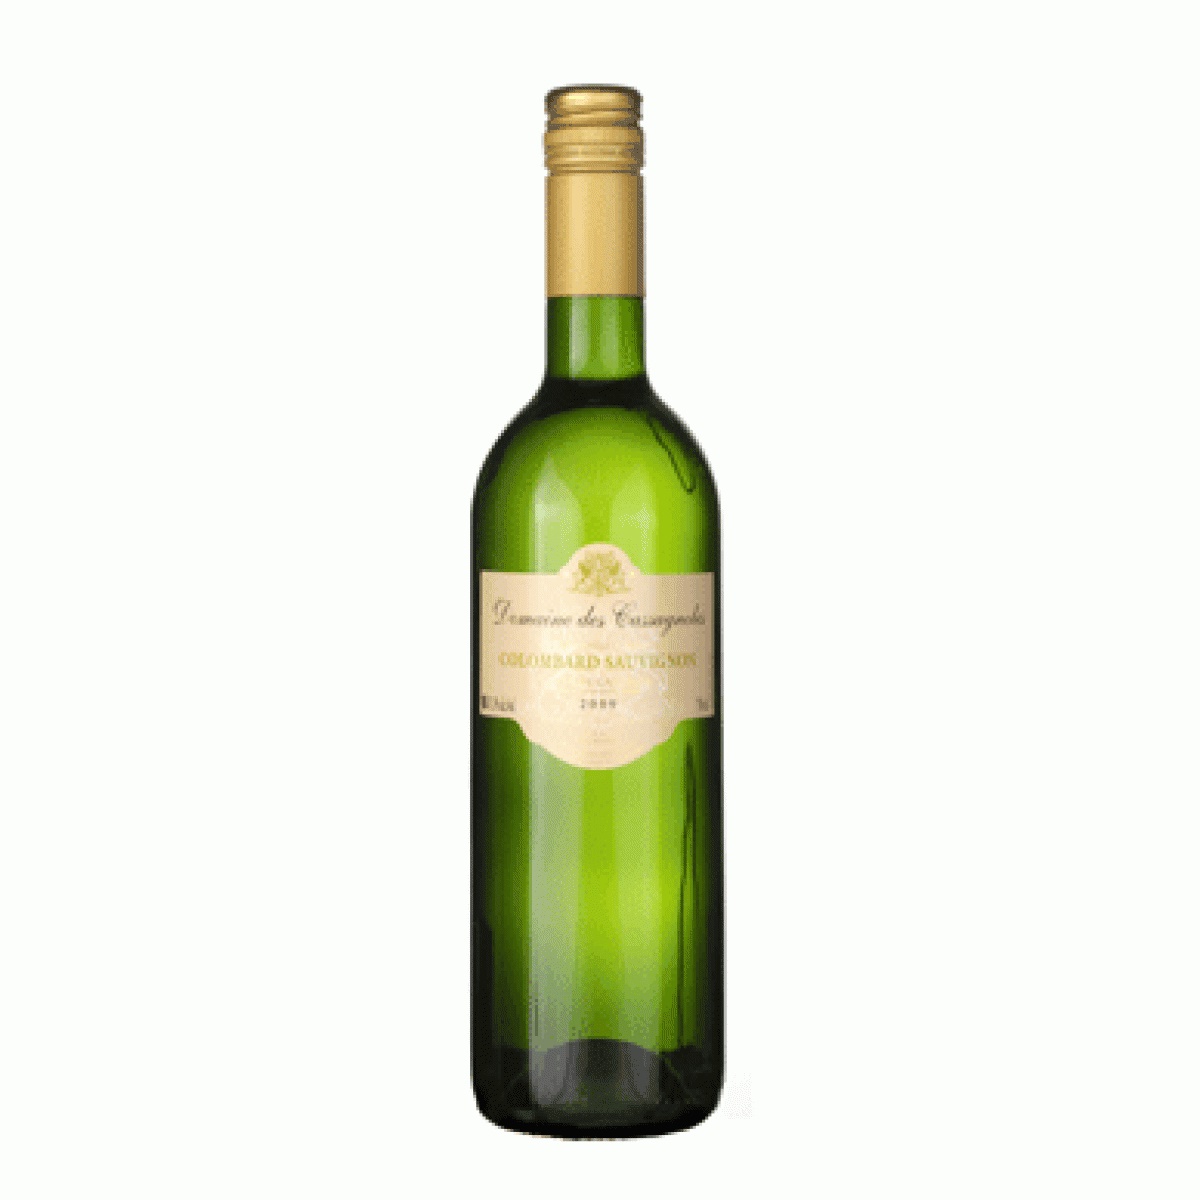 70189 Colombard Sauvignon Blanc 0,75 liter